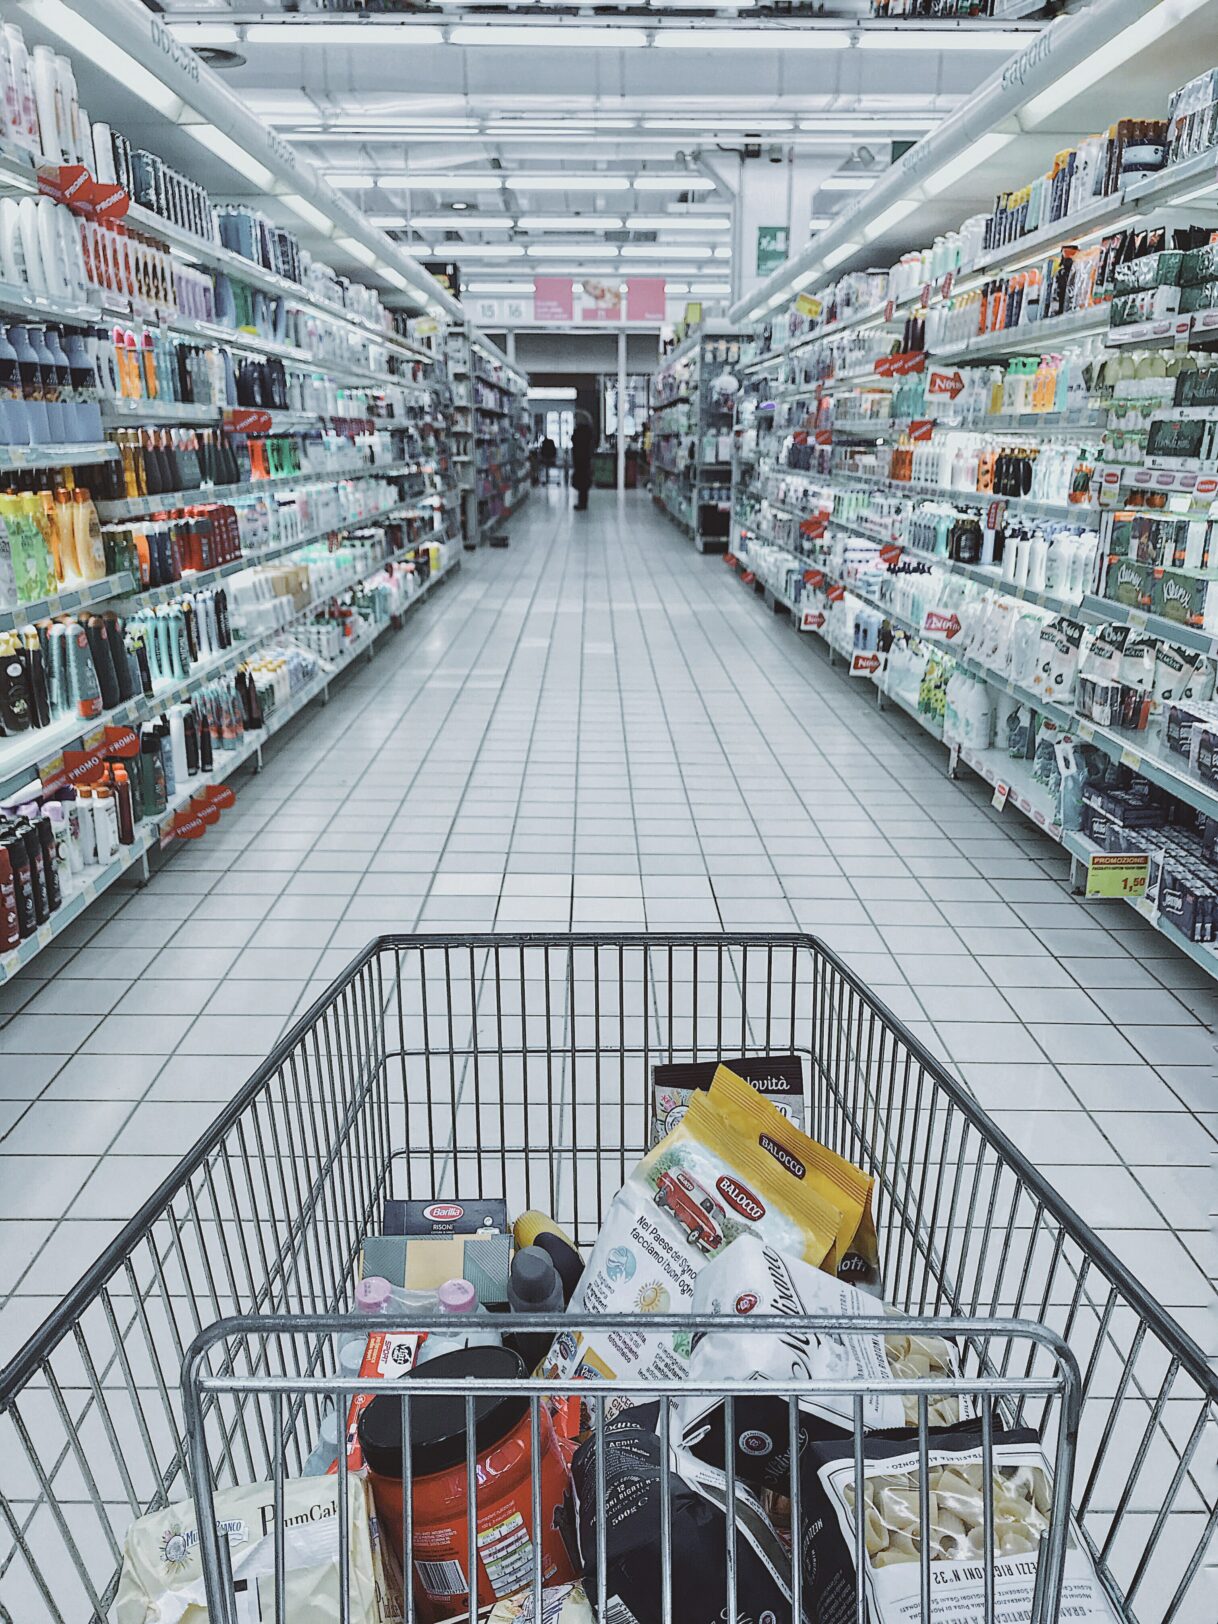 A cart shopping down a store aisle